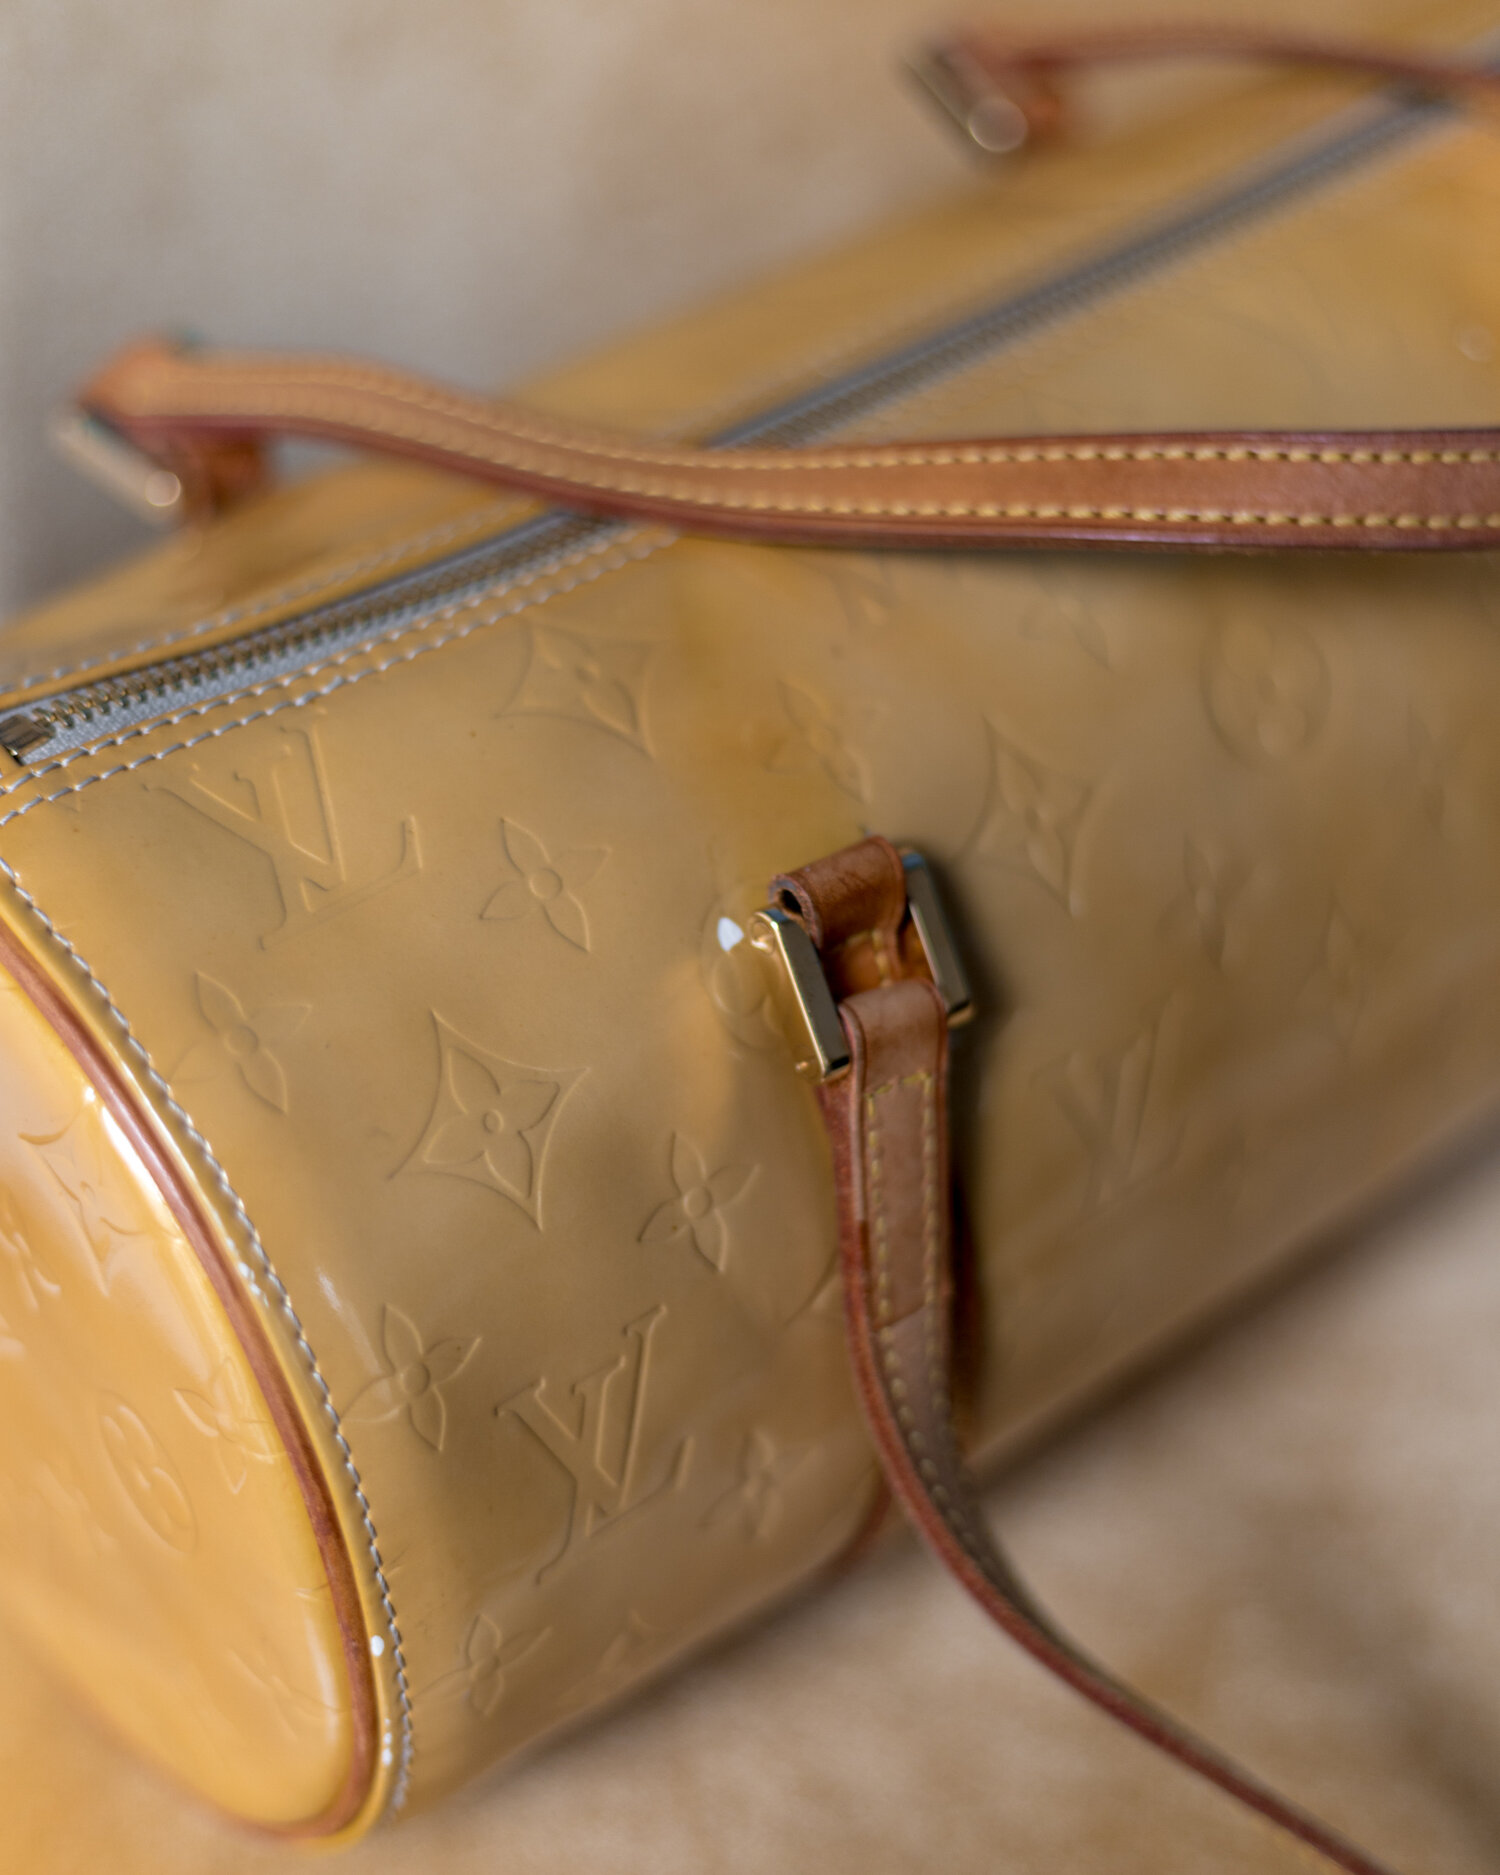 Louis Vuitton Papillon Bag in Yellow Ochre Patent Leather — singulié